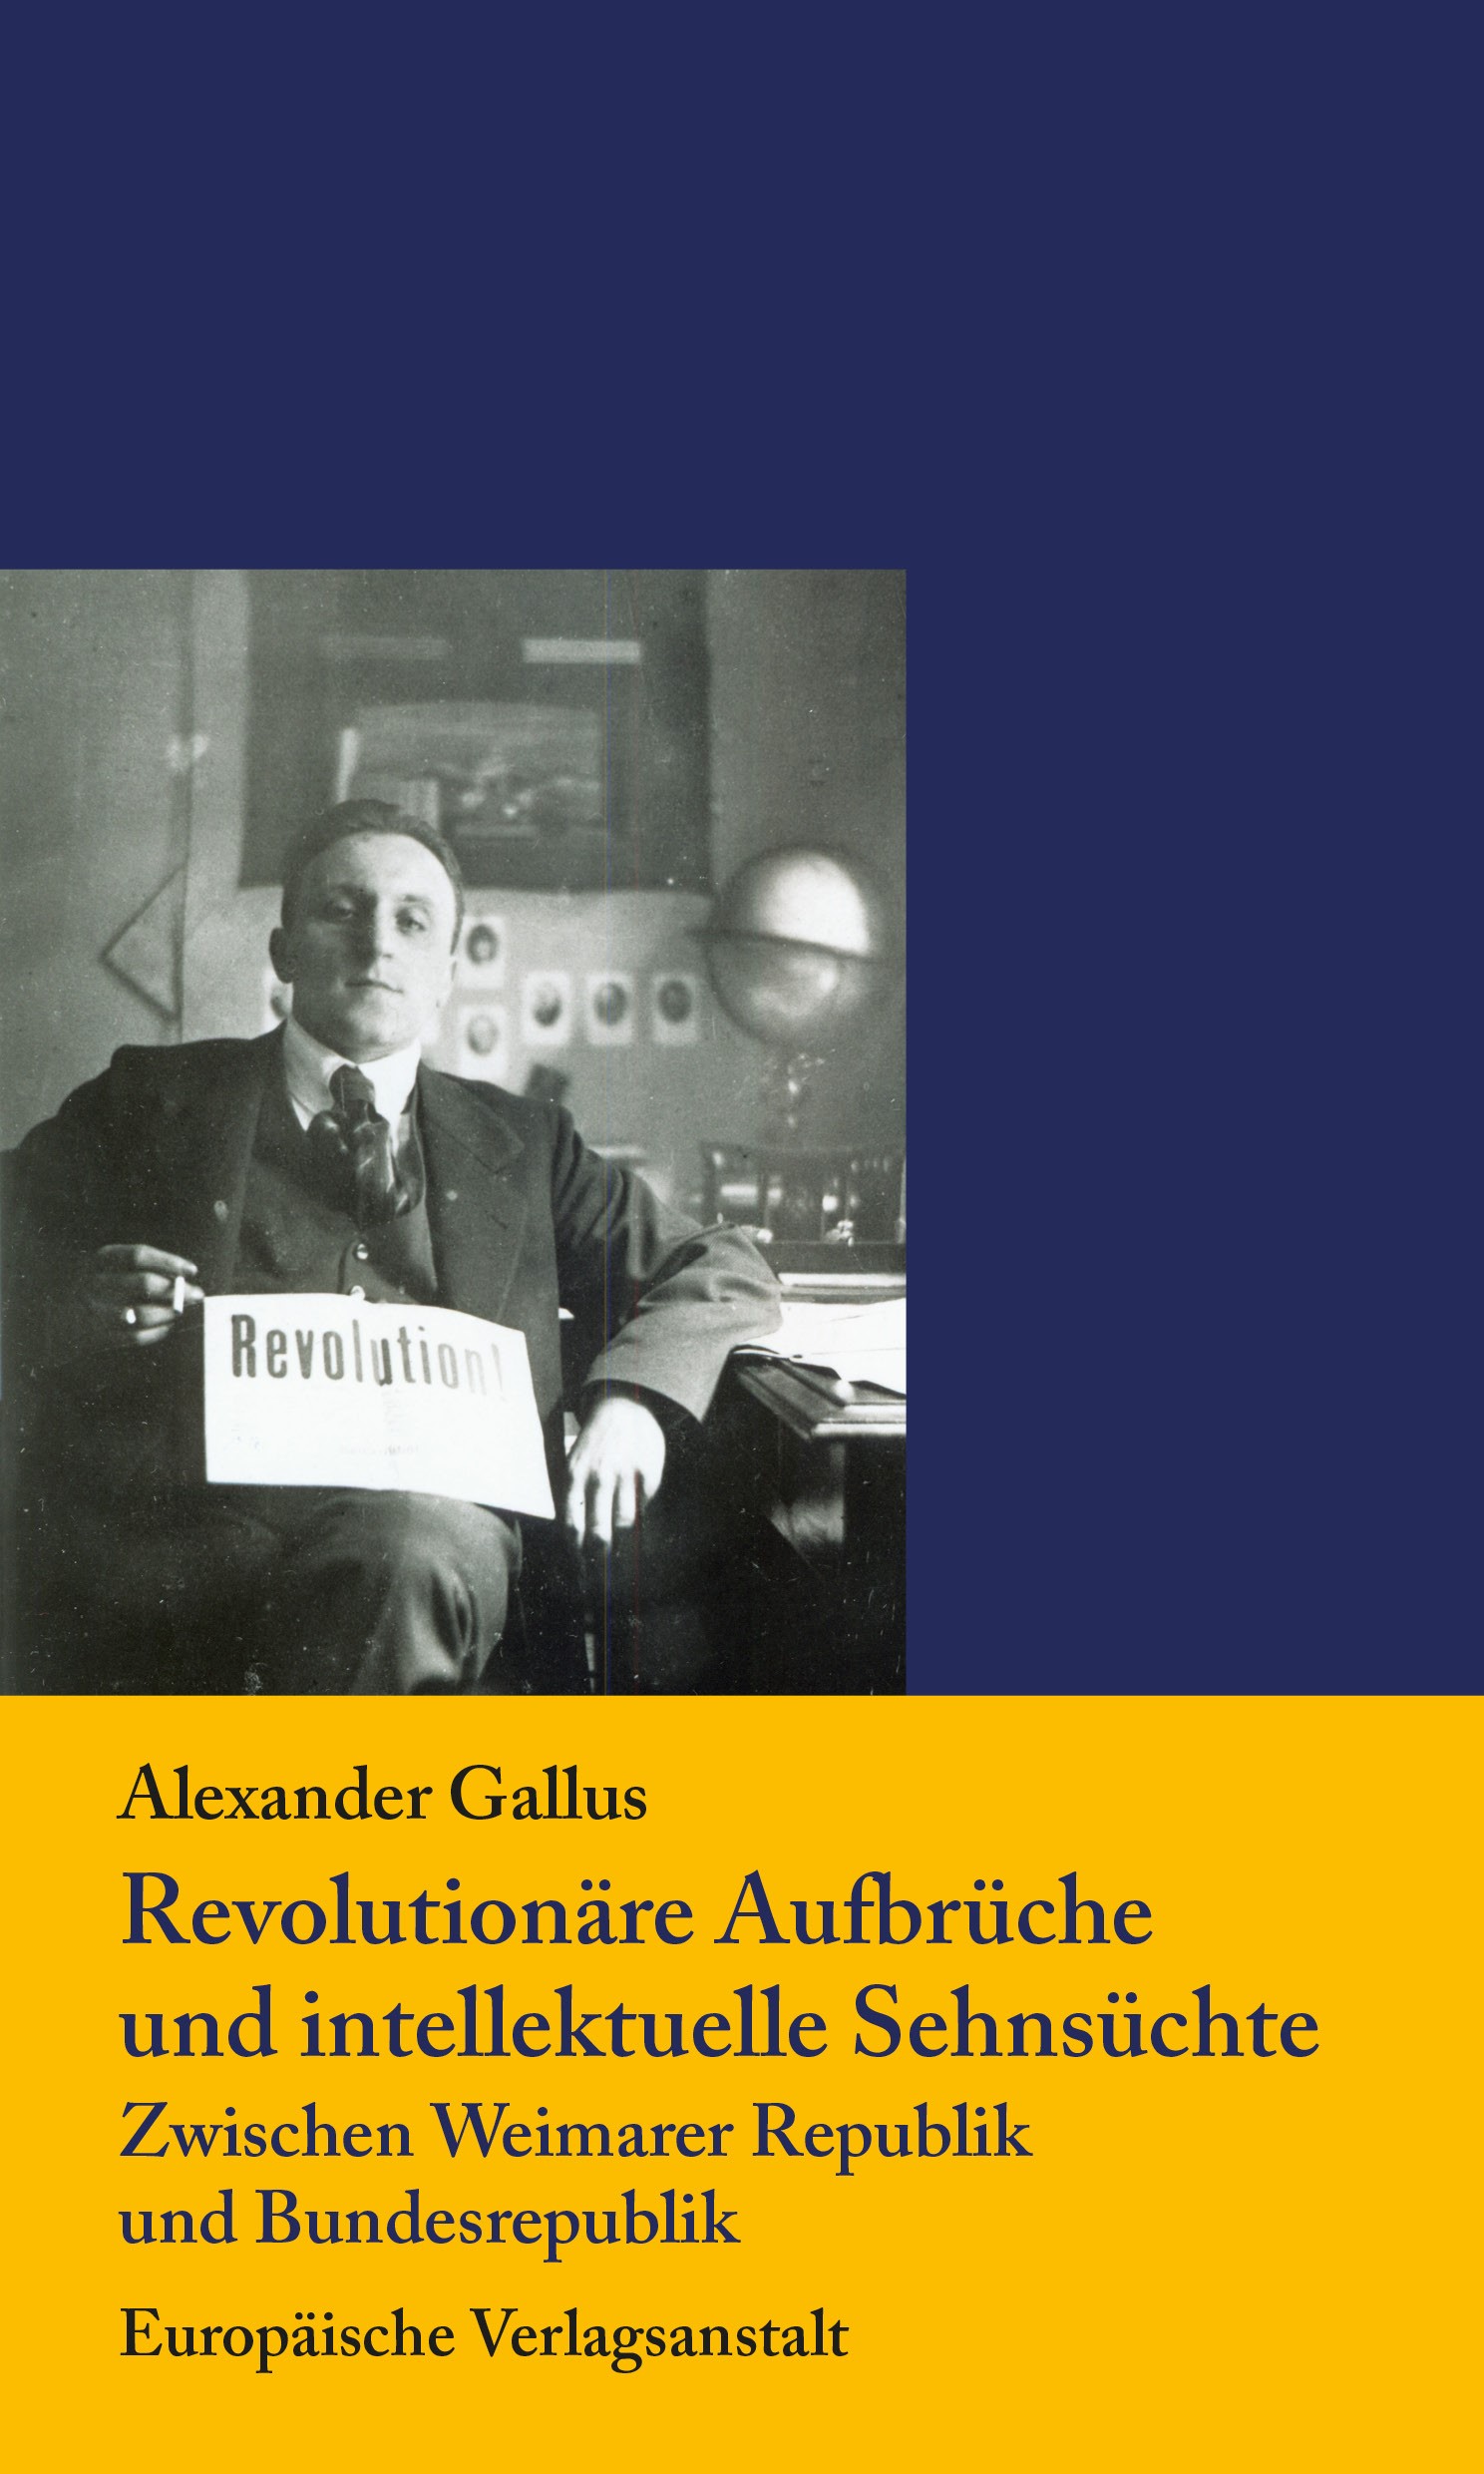 Titelbild der Buchpublikation "Revolutionäre Aufbrüche und intellektuelle Sehnsüchte"